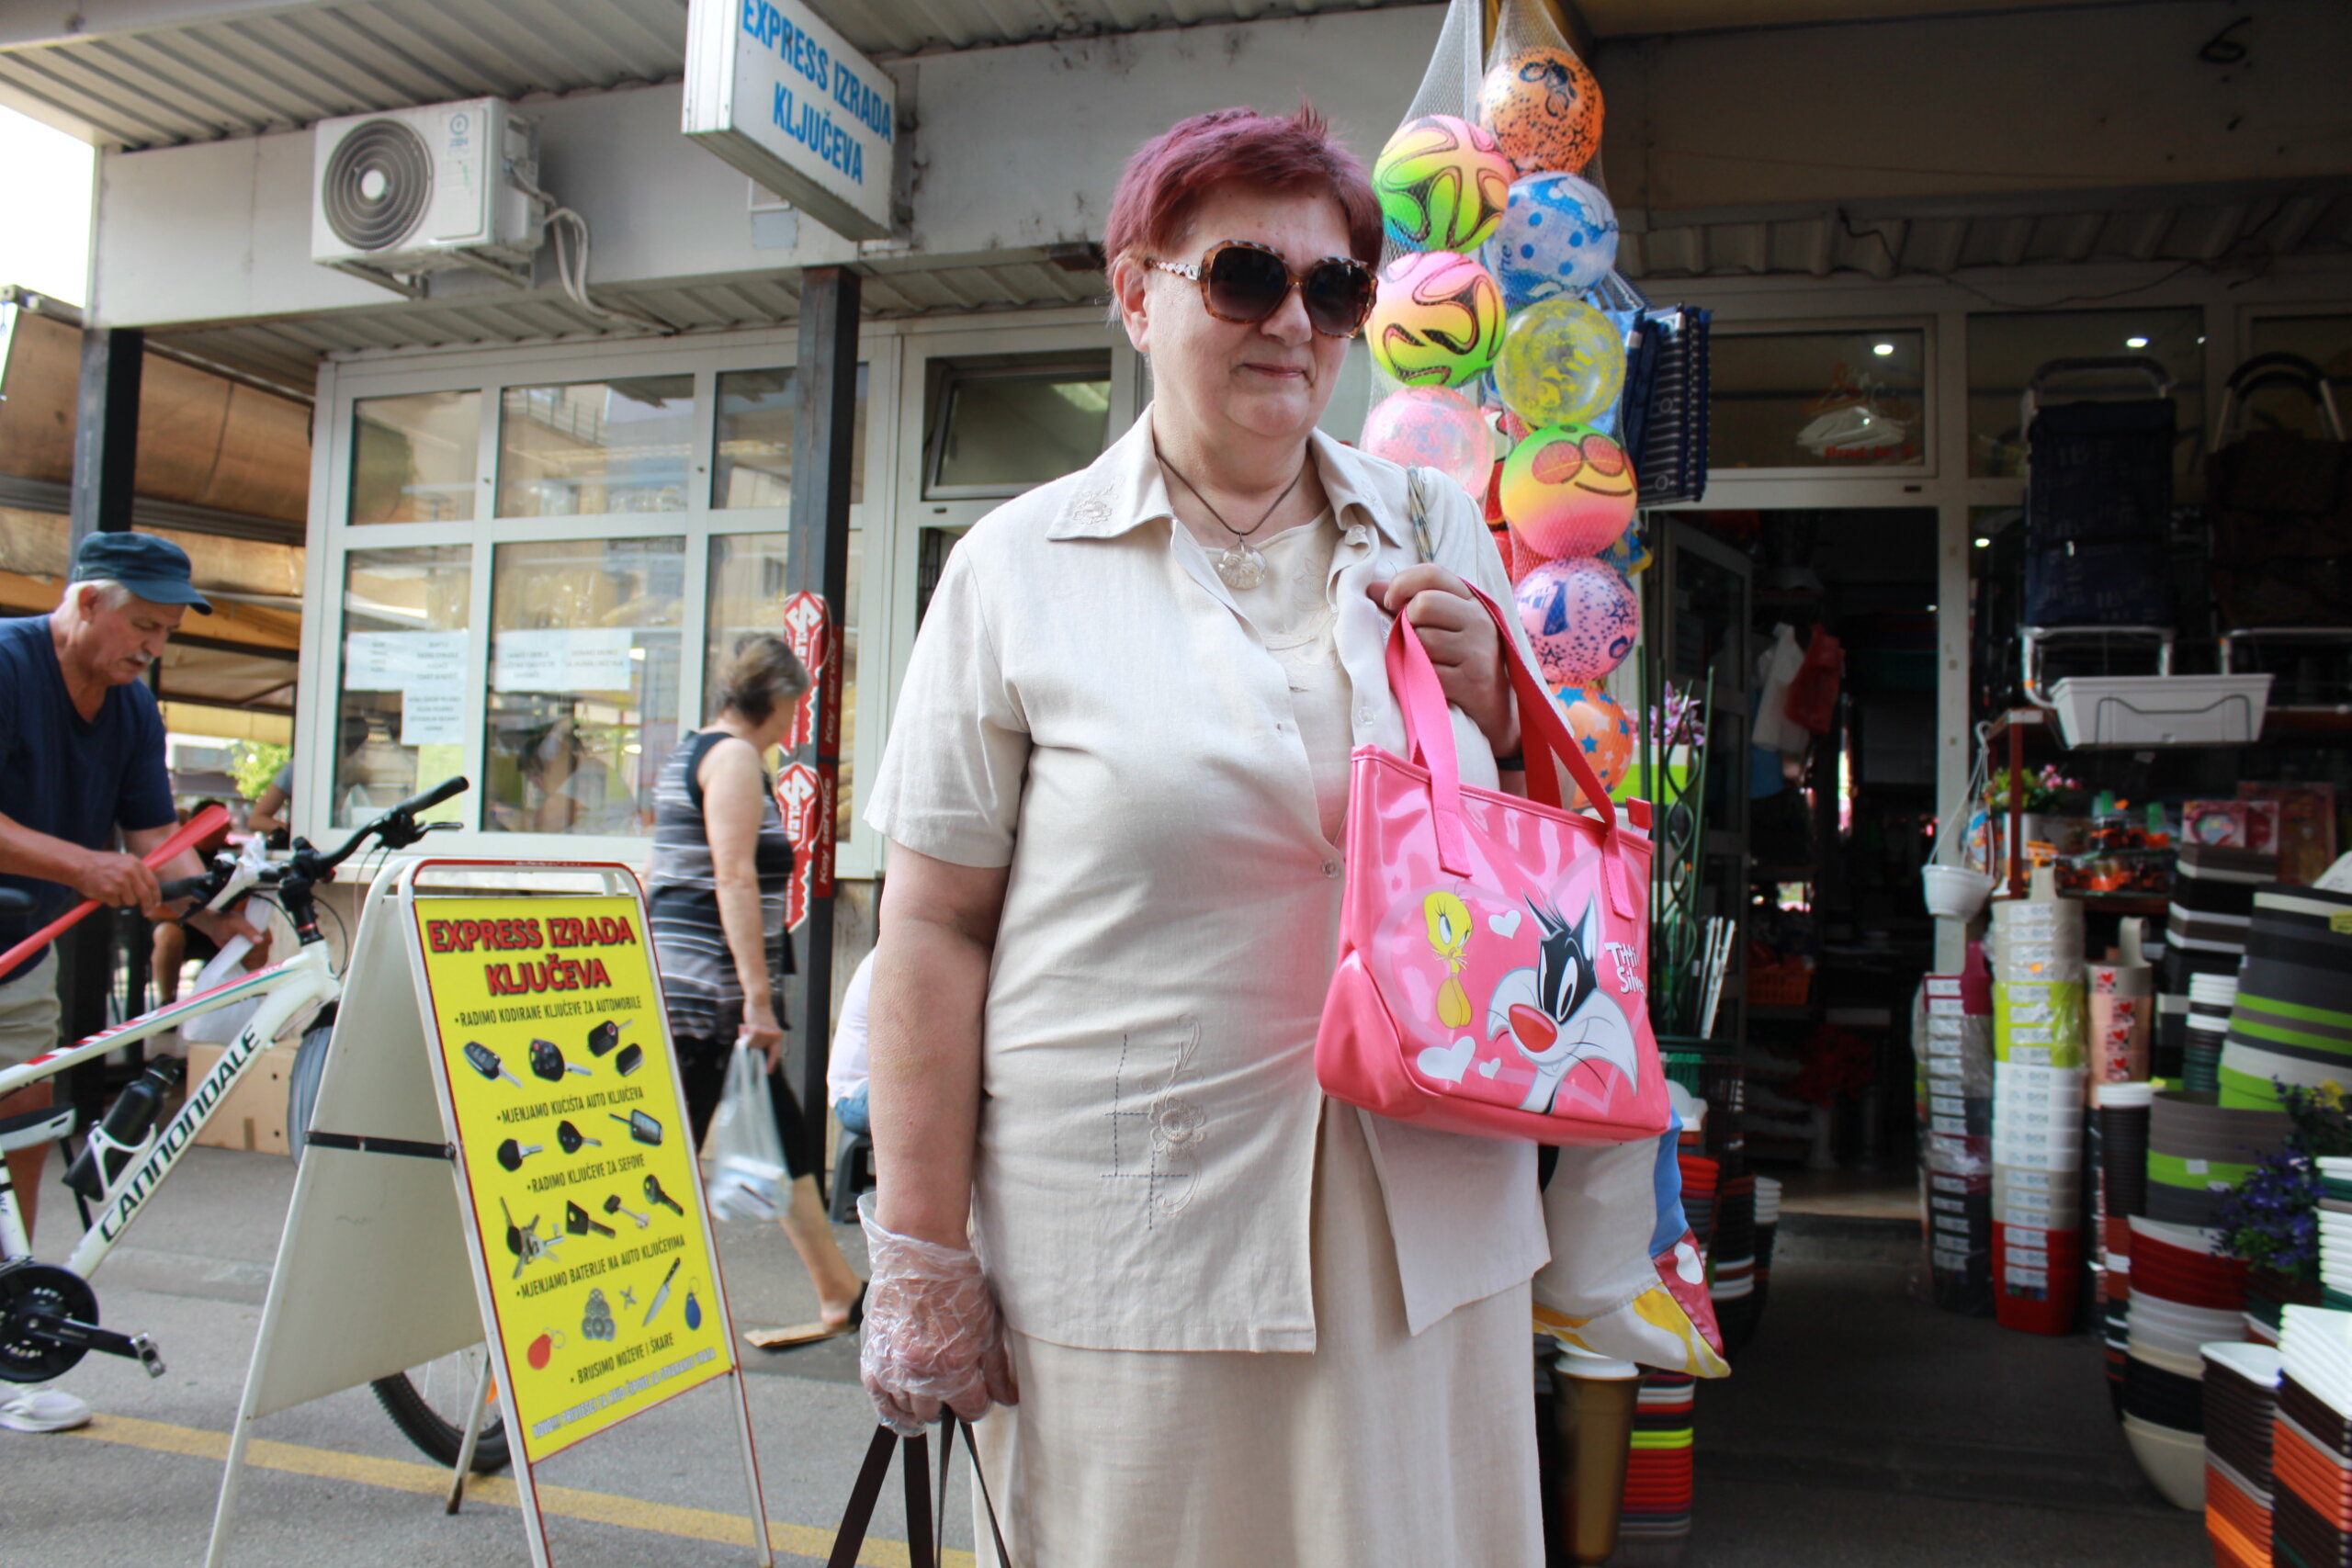 Umirovljenica Lidija pozira s torbom u rukama na ulici